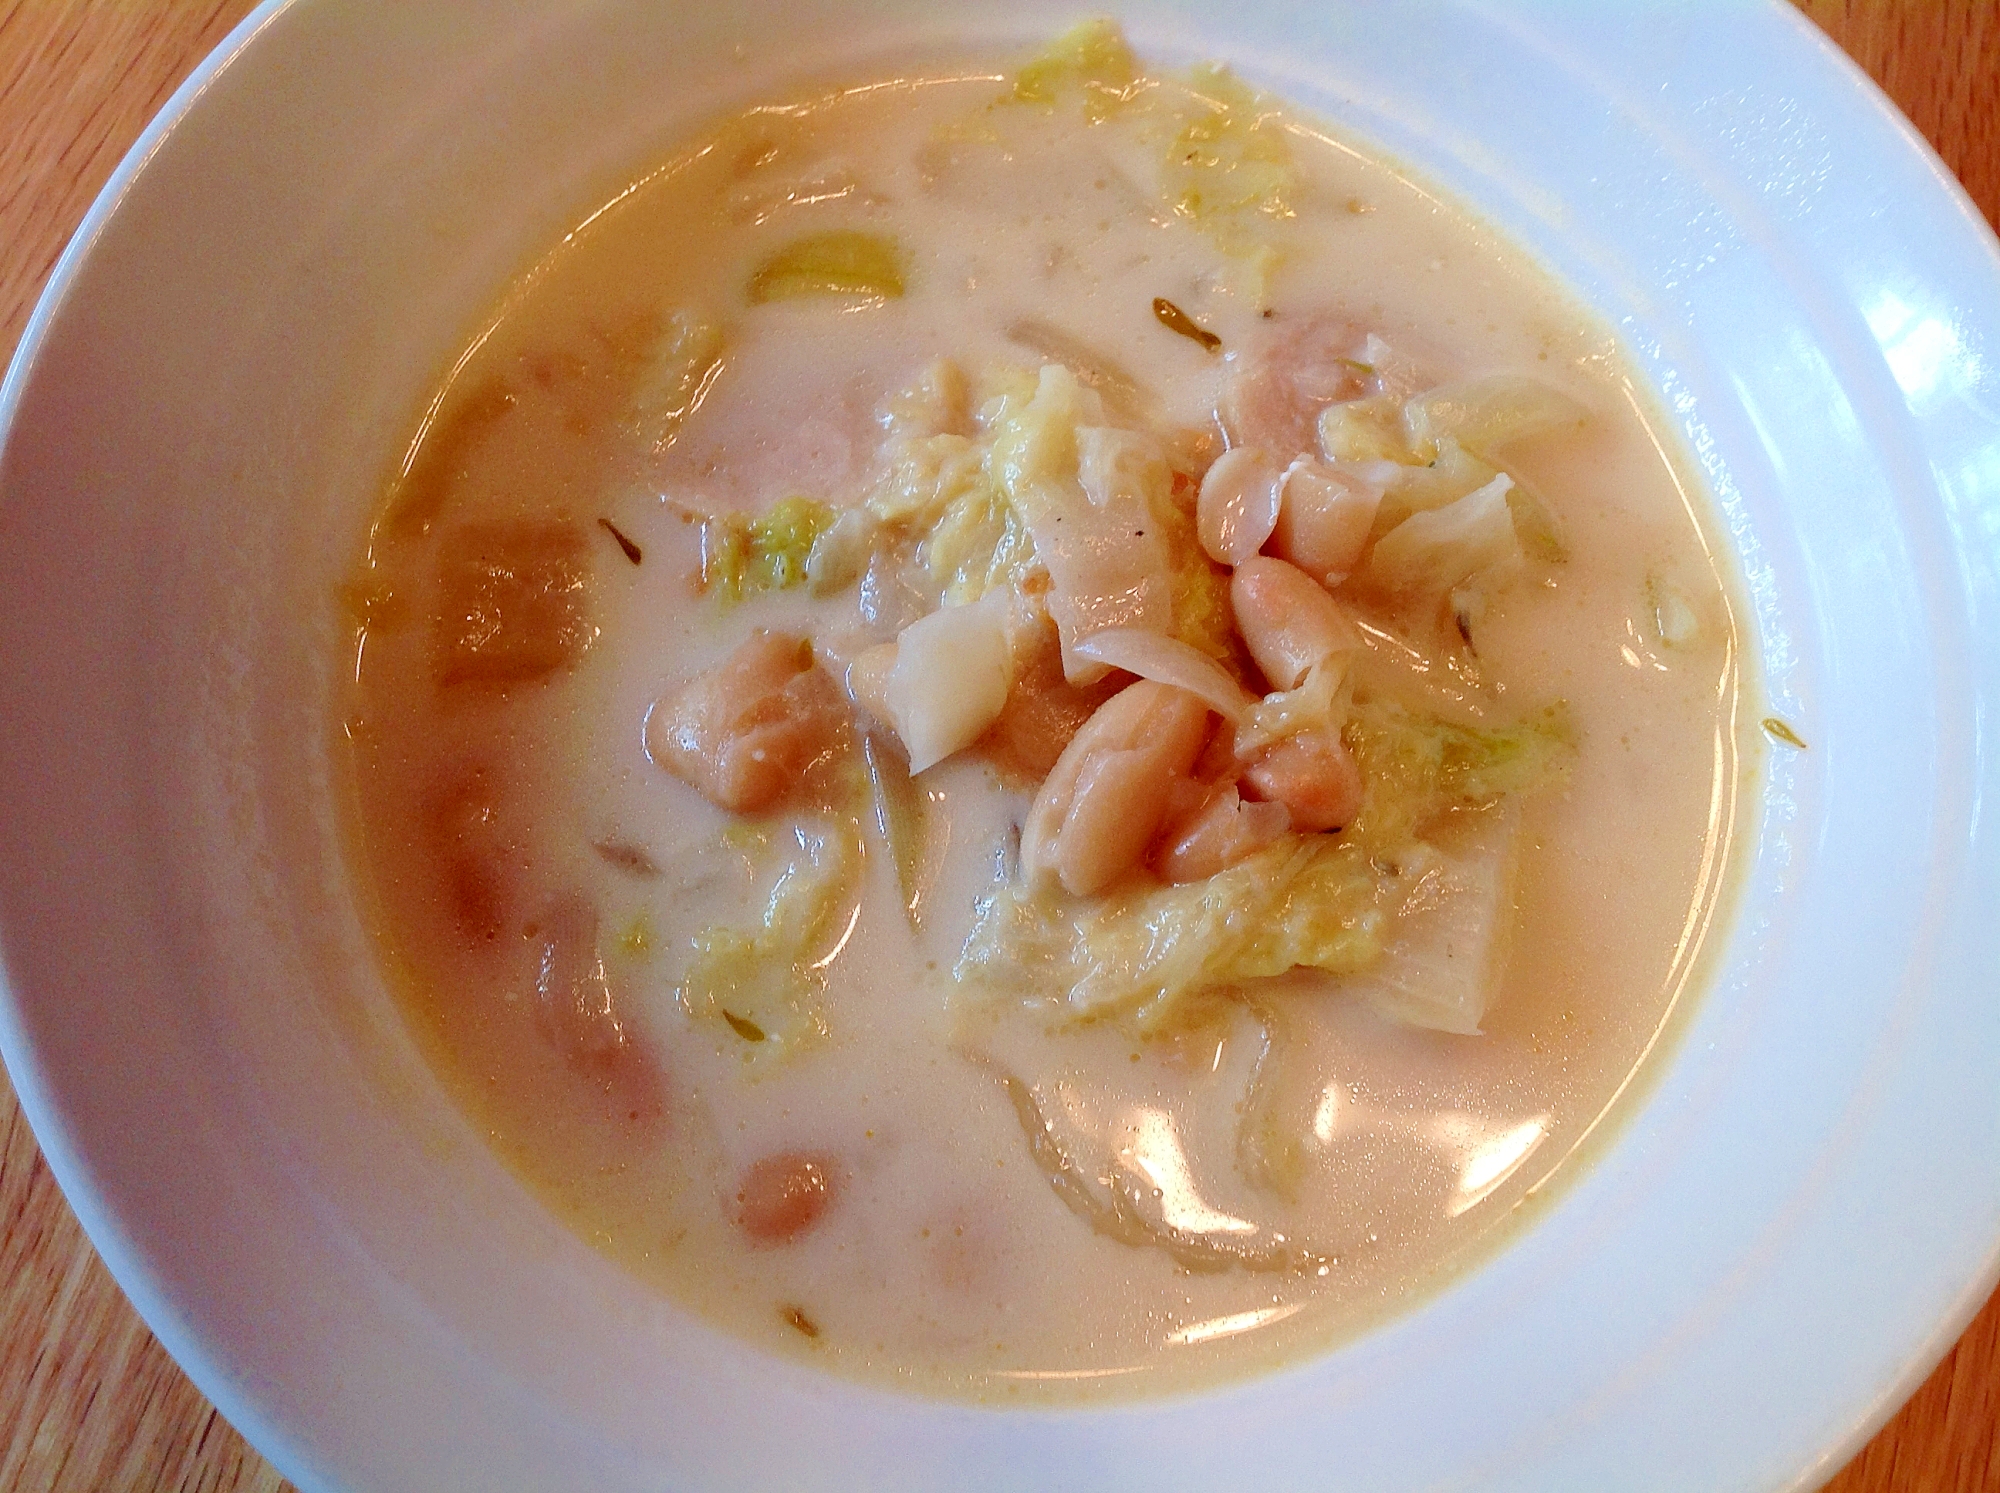 白菜と白インゲン豆の白いスープ